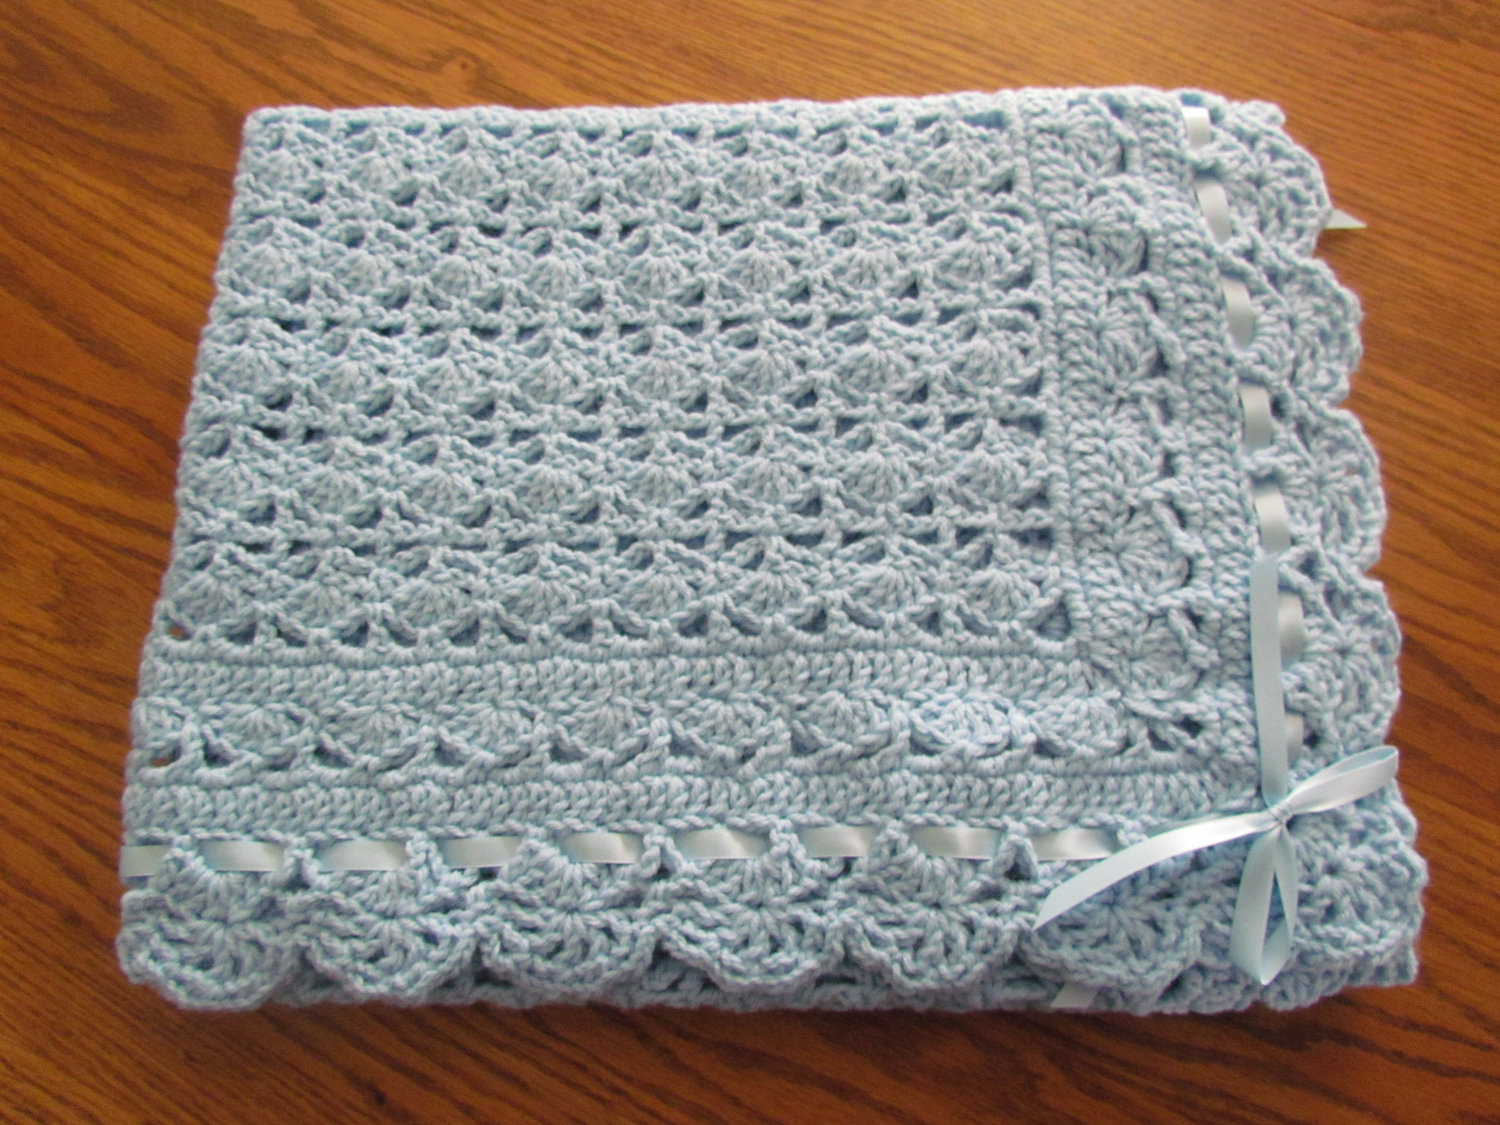 Lacy Layette Crochet Pattern : 13 Lacy Baby Blanket Crochet Patterns